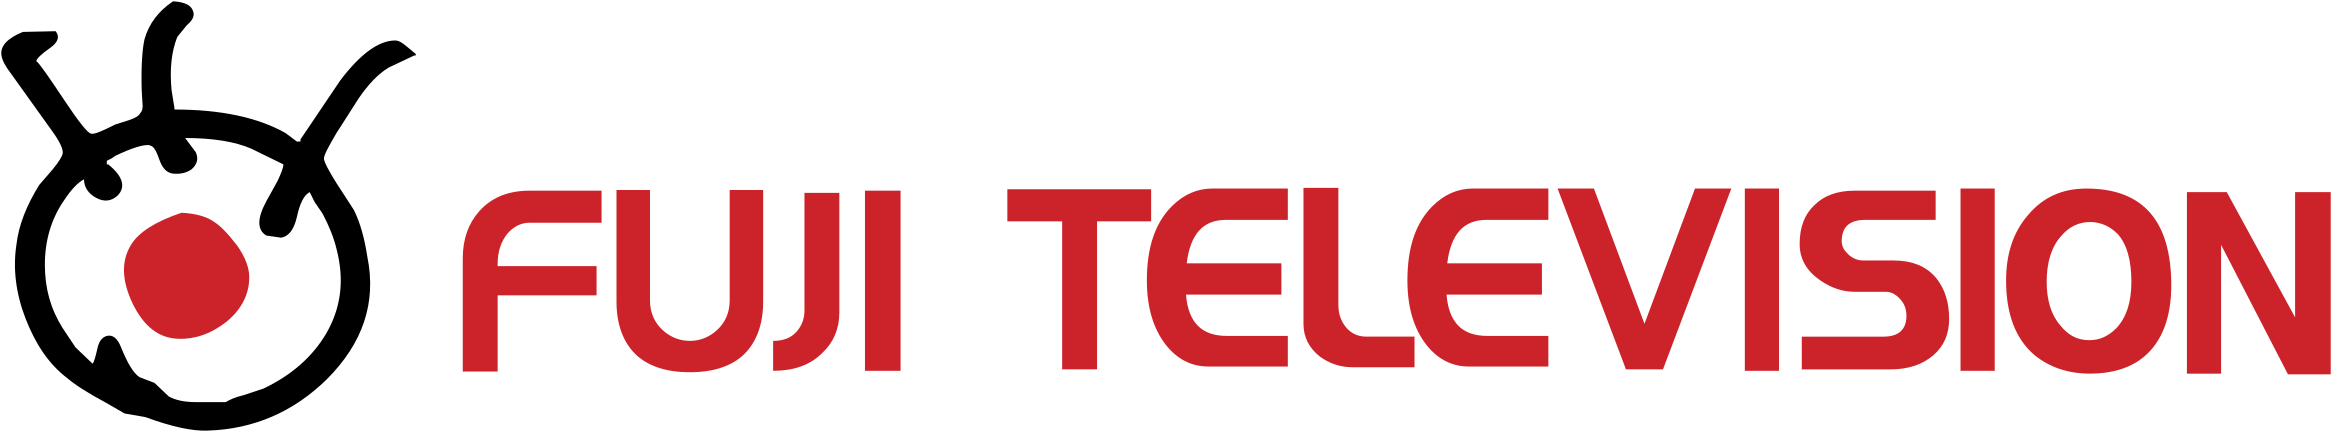 Fuji Television Logo Png Transparent - Fuji Tv Logo Png Clipart (2400x2400), Png Download